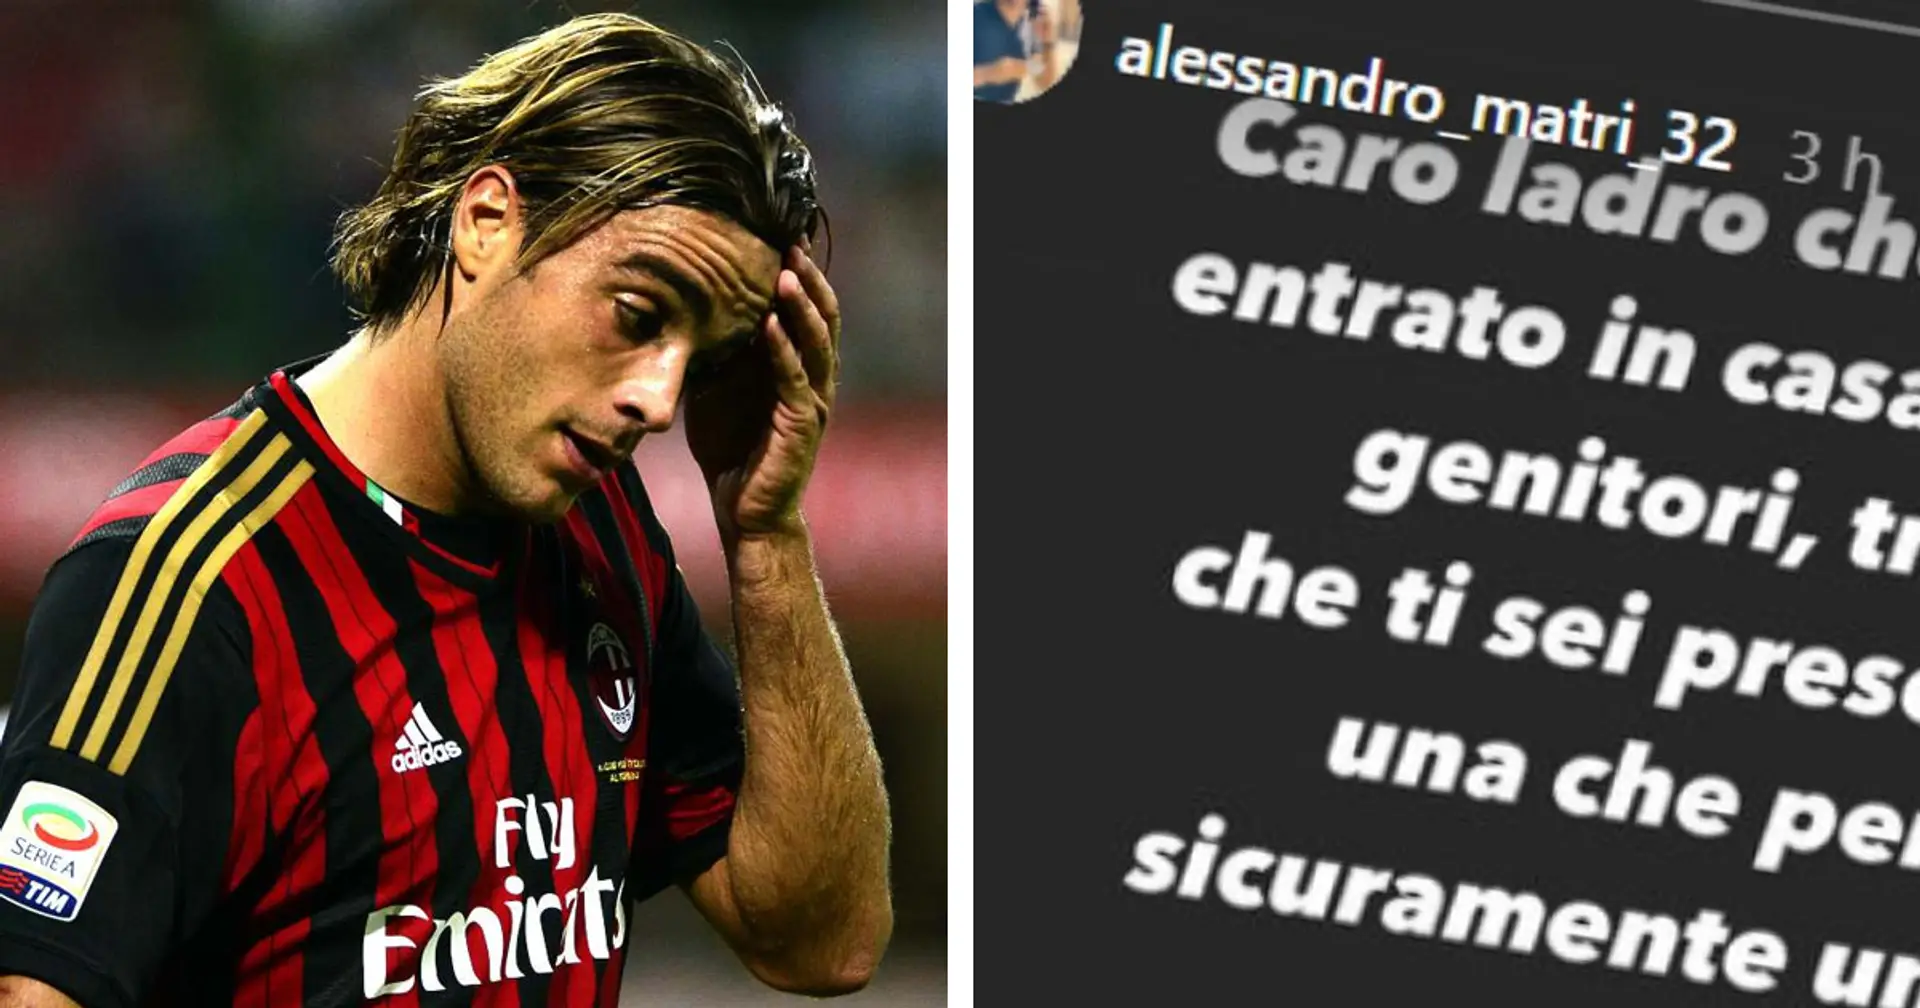 Matri scrive ai ladri dopo il furto in casa dei genitori: "Fatemi riavere la maglia dell'esordio in A col Milan"